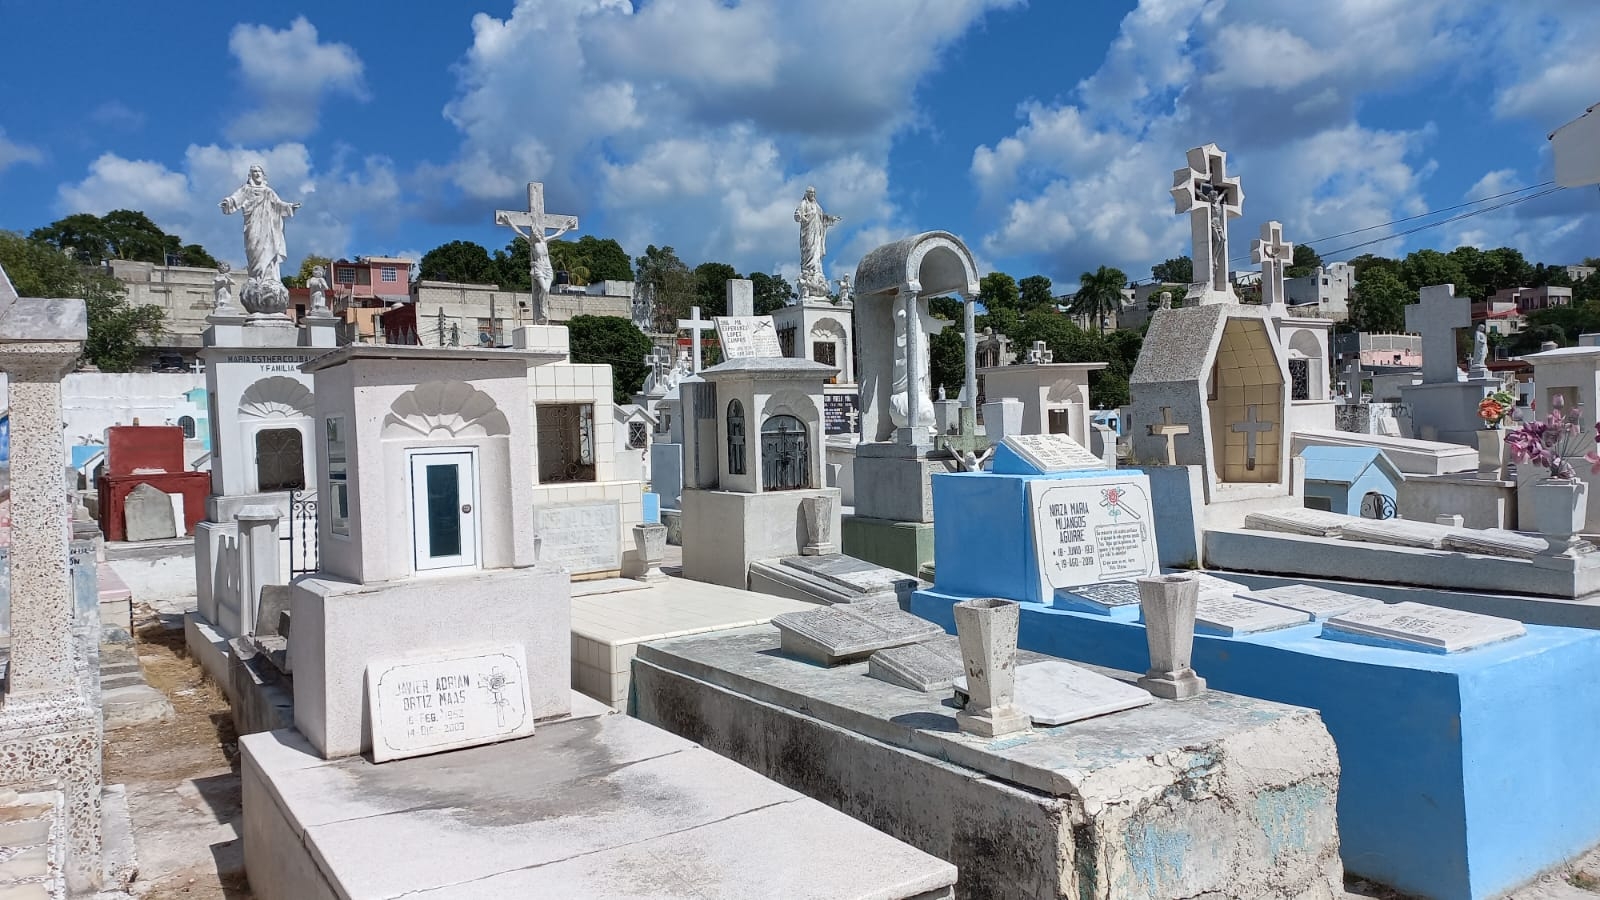 Cementerio de Campeche registra baja afluencia de visitantes previo al Día de Muertos: VIDEO